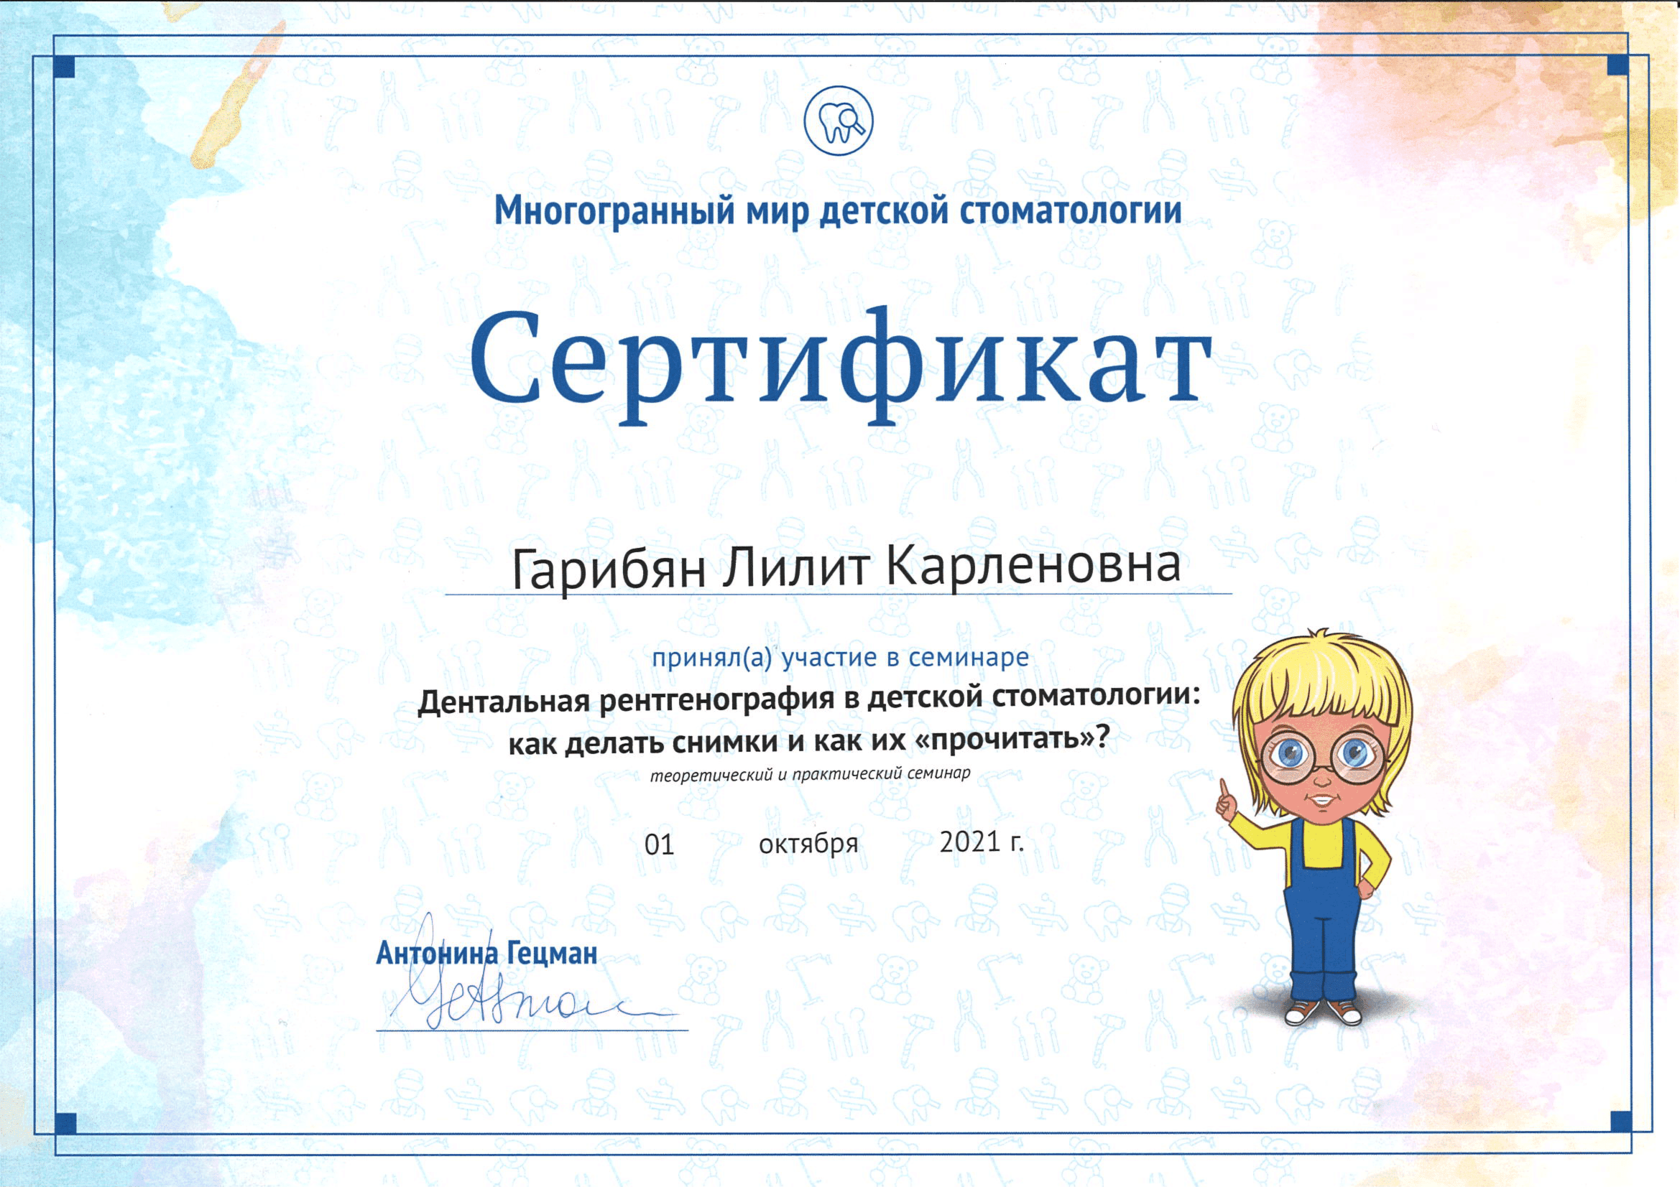 Гарибян Лилит Карленовна сертификат специалиста 8